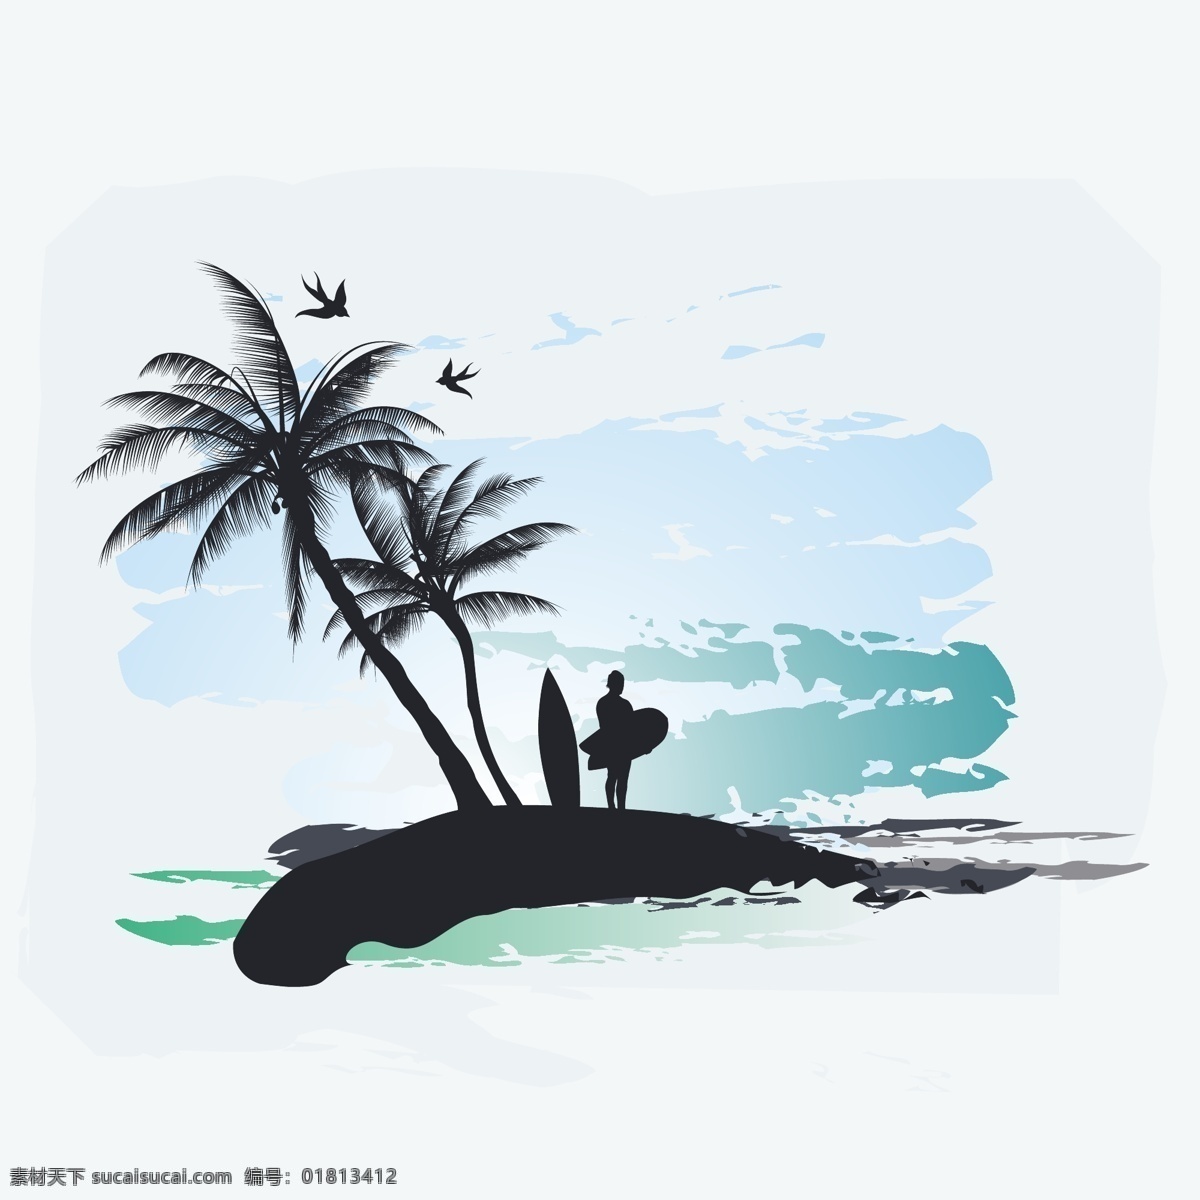 背景 岛 海 海滩 景观 浪漫 泼墨 生物世界 树 棕榈树 矢量 模板下载 小岛 热带气候 椰树 插图和绘画 夏季 太平洋海洋 宁静的场景 自然 树木树叶 psd源文件